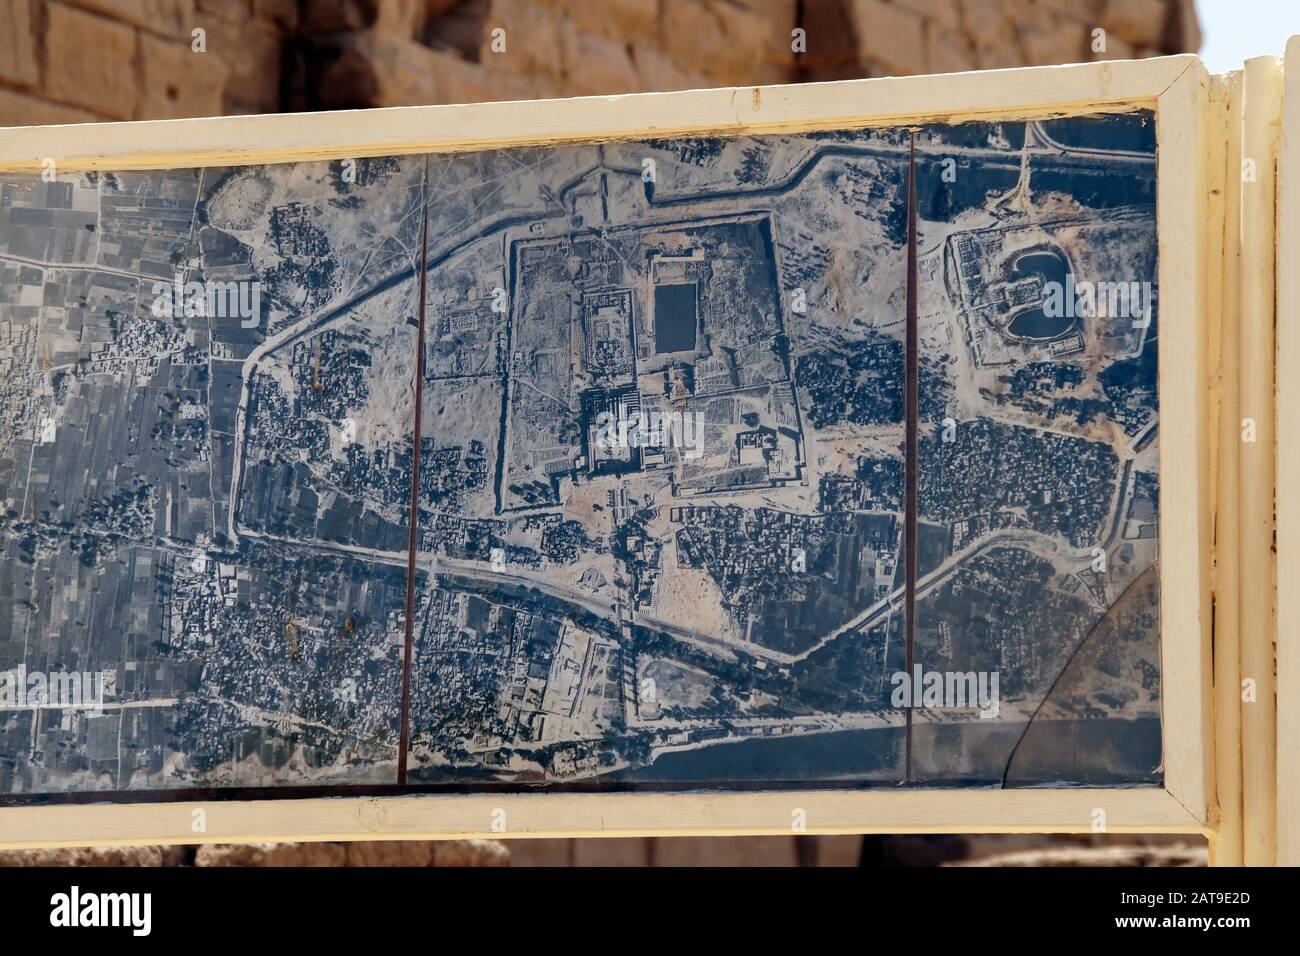 Luxor, Karnak, Egitto, Africa. Tempio di Karnak. Una vecchia fotografia aerea dell'area del tempio postata vicino all'entrata. Foto Stock